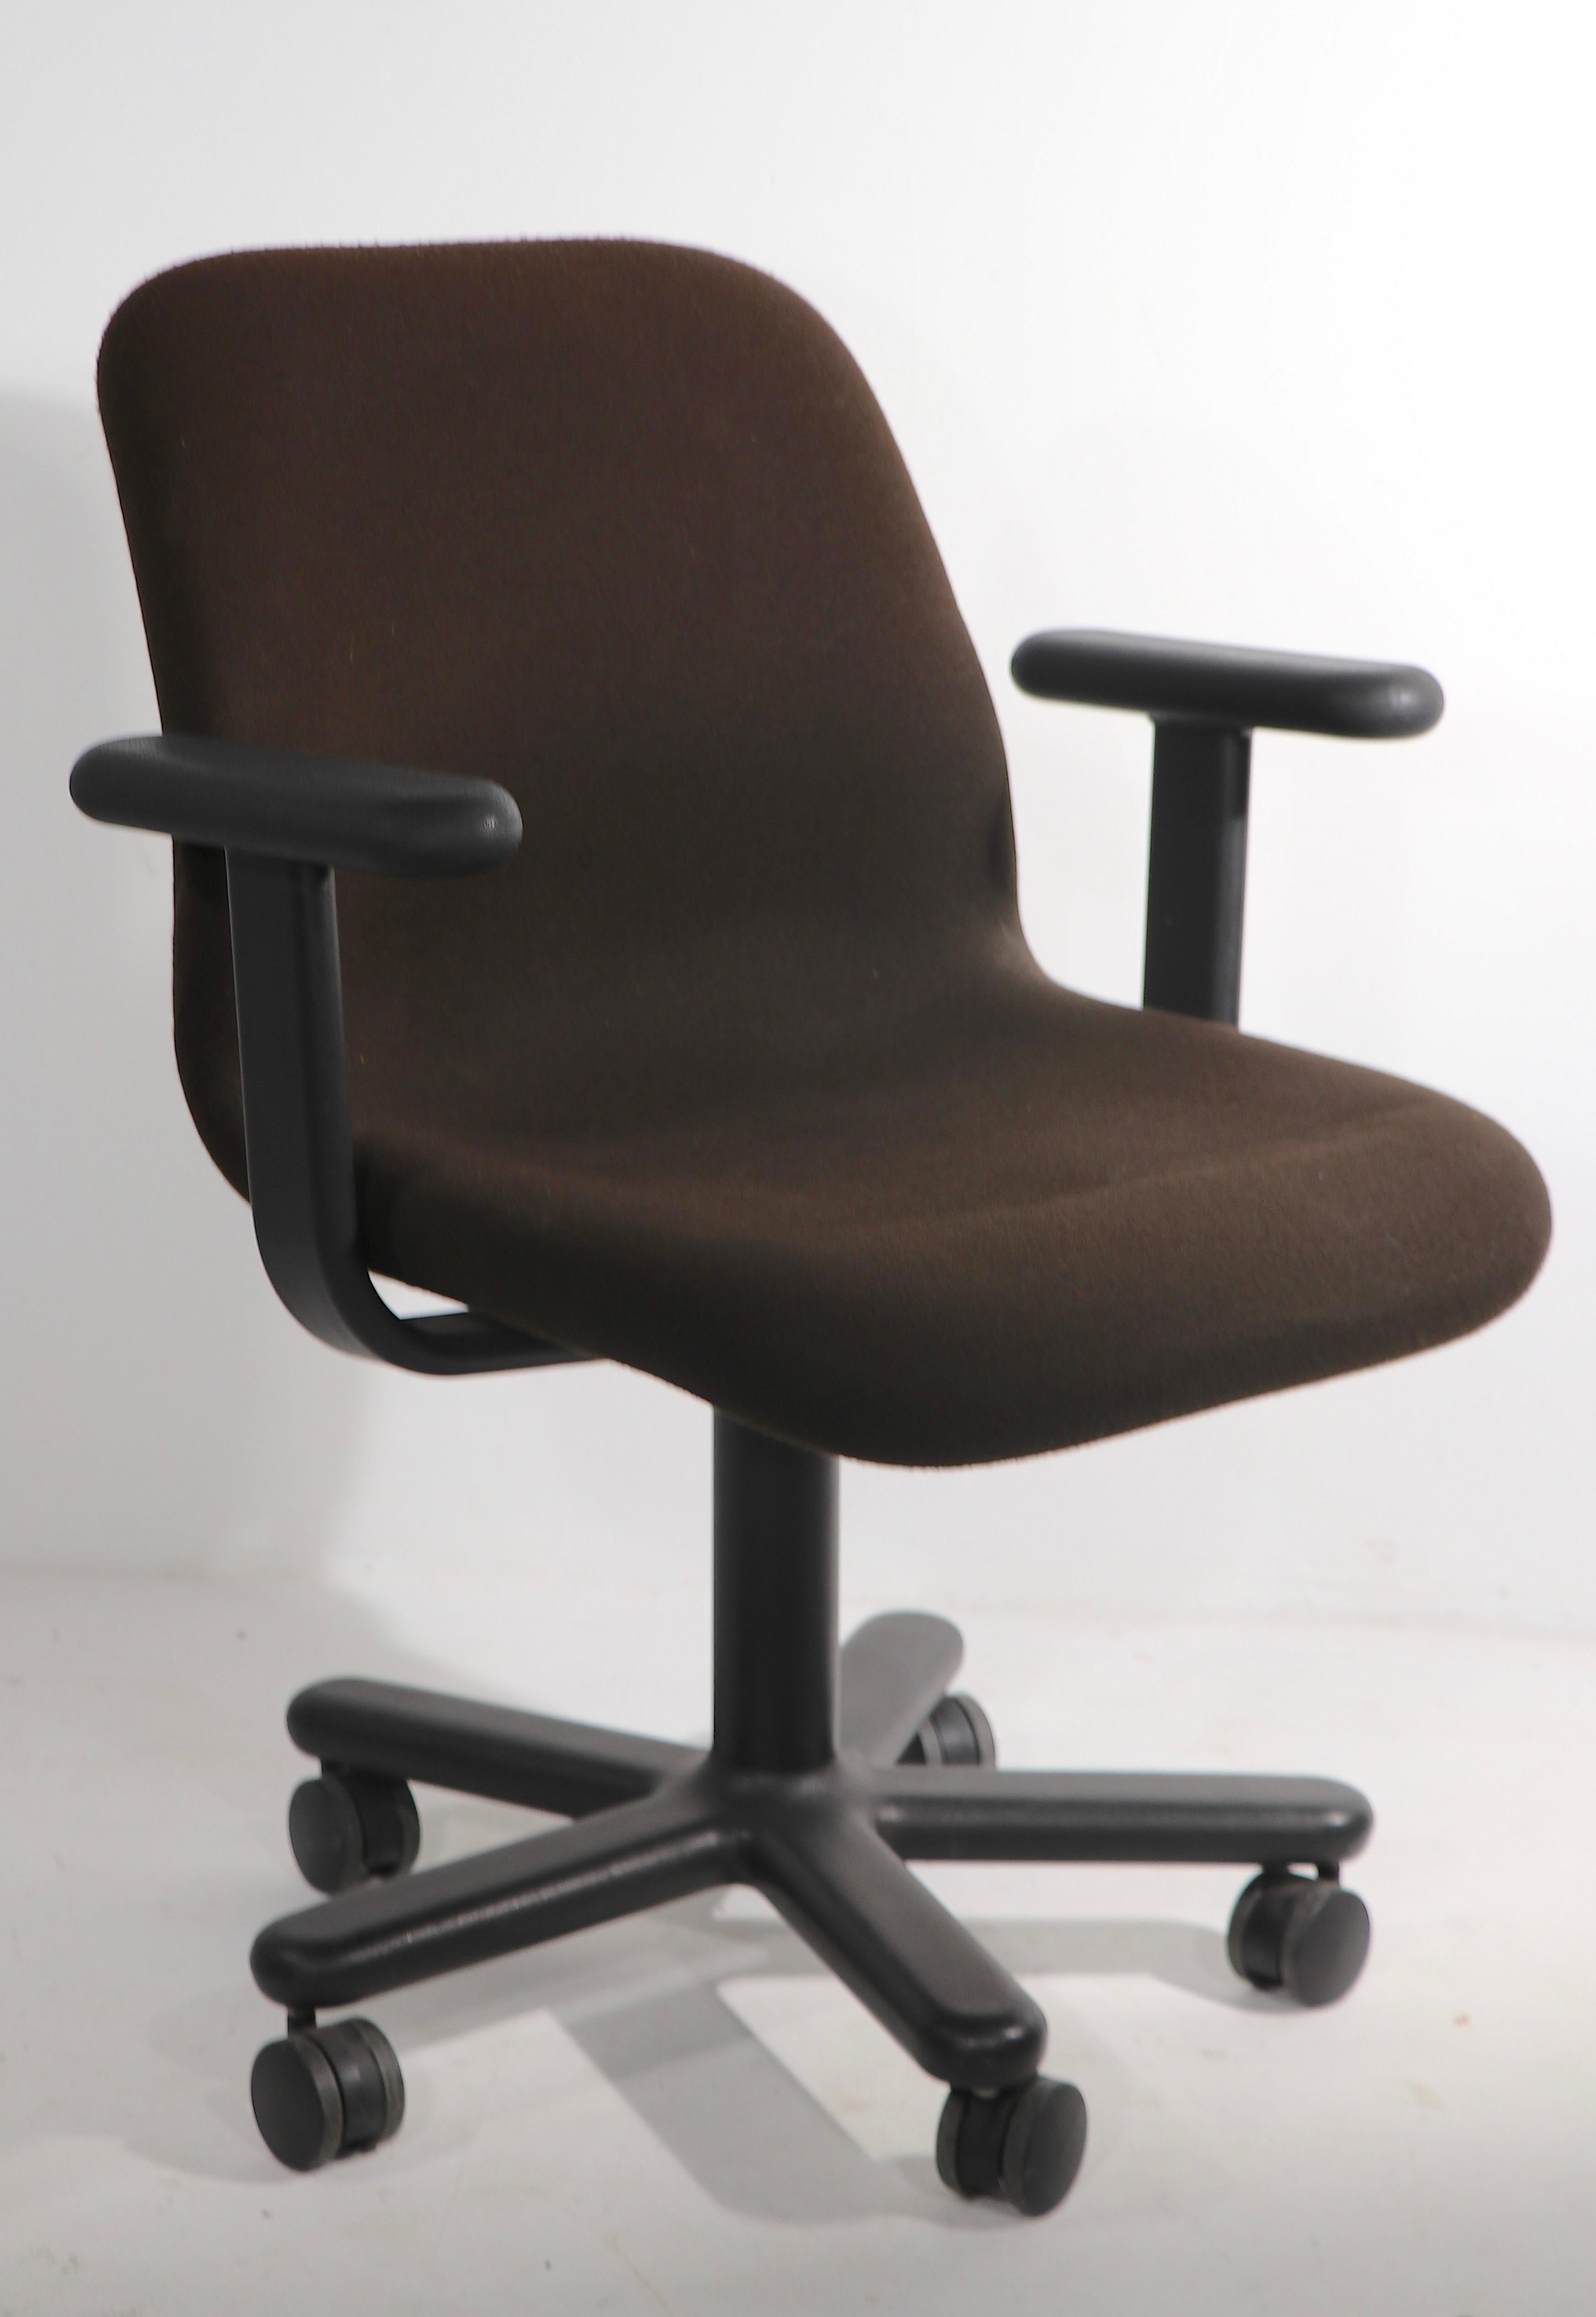 Exceptionnelle chaise(s) de bureau pivotante(s) Knoll des années 1970, en riche rembourrage de mousse formée marron, sur base cinq étoiles. La chaise pivote à 360° et sa base repose sur des pieds à roulettes doubles, ce qui rend cette chaise